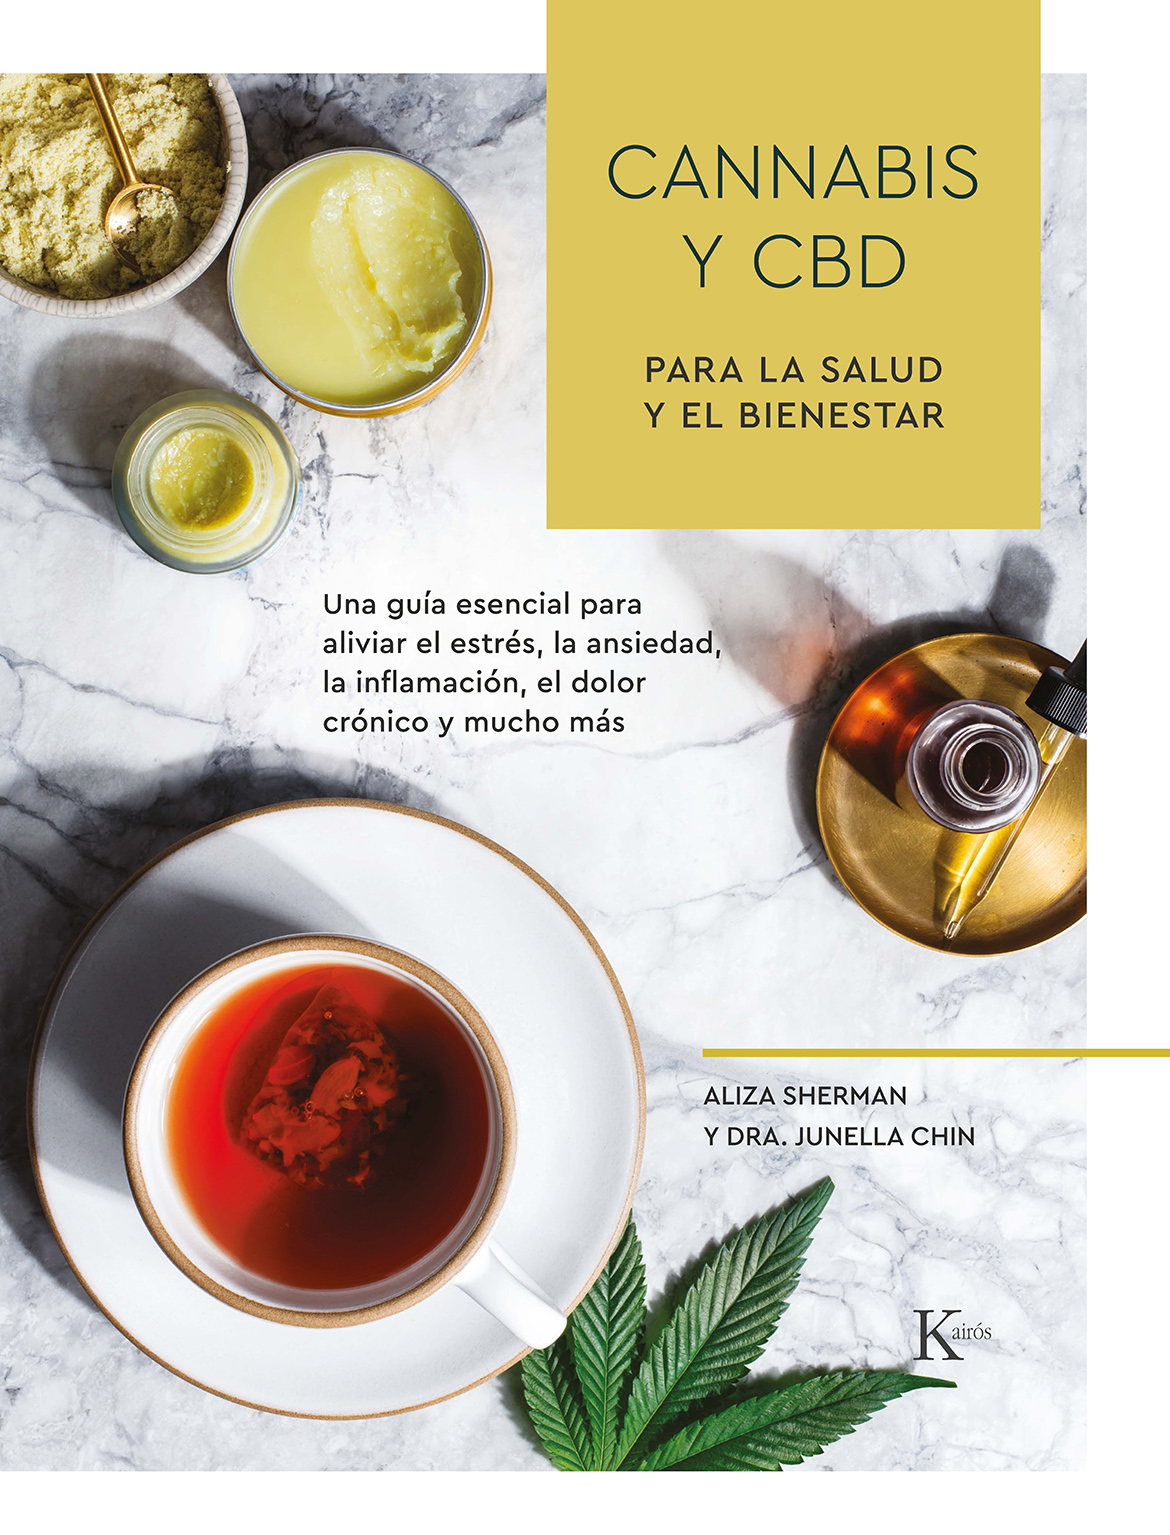 Cannabis y CBD para la salud y el bienestar   «Una guía esencial para aliviar el estrés, la ansiedad, la inflamación, el dolor crónico y mucho más» (9788499887517)